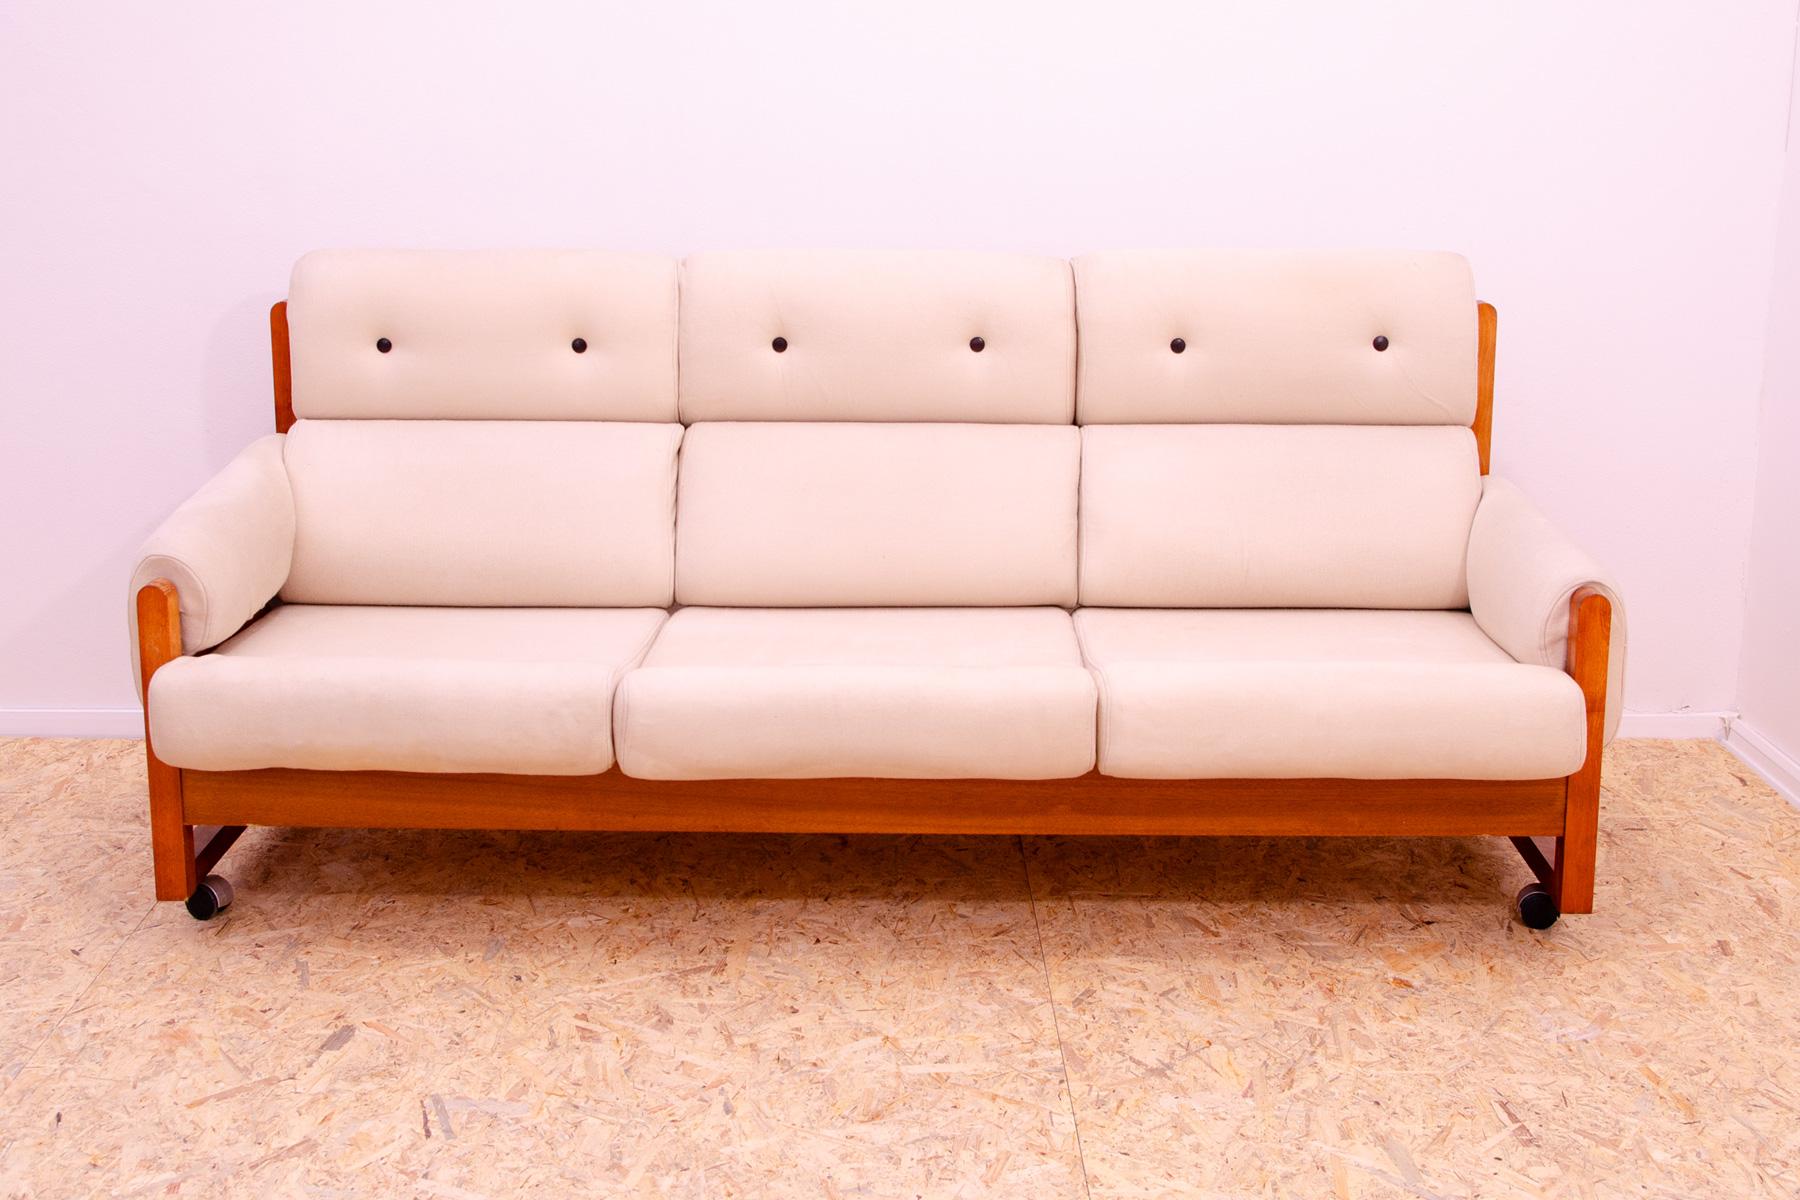 Dieses Lounge-Dreisitzer-Sofa wurde um 1970 hergestellt. Er ist mit Stoff gepolstert. Die Struktur ist aus Buchenholz und die Möbel stehen auf Metallrädern. Alle in sehr gutem Vintage-Zustand, mit leichten Alters- und Gebrauchsspuren. Das Sofa ist